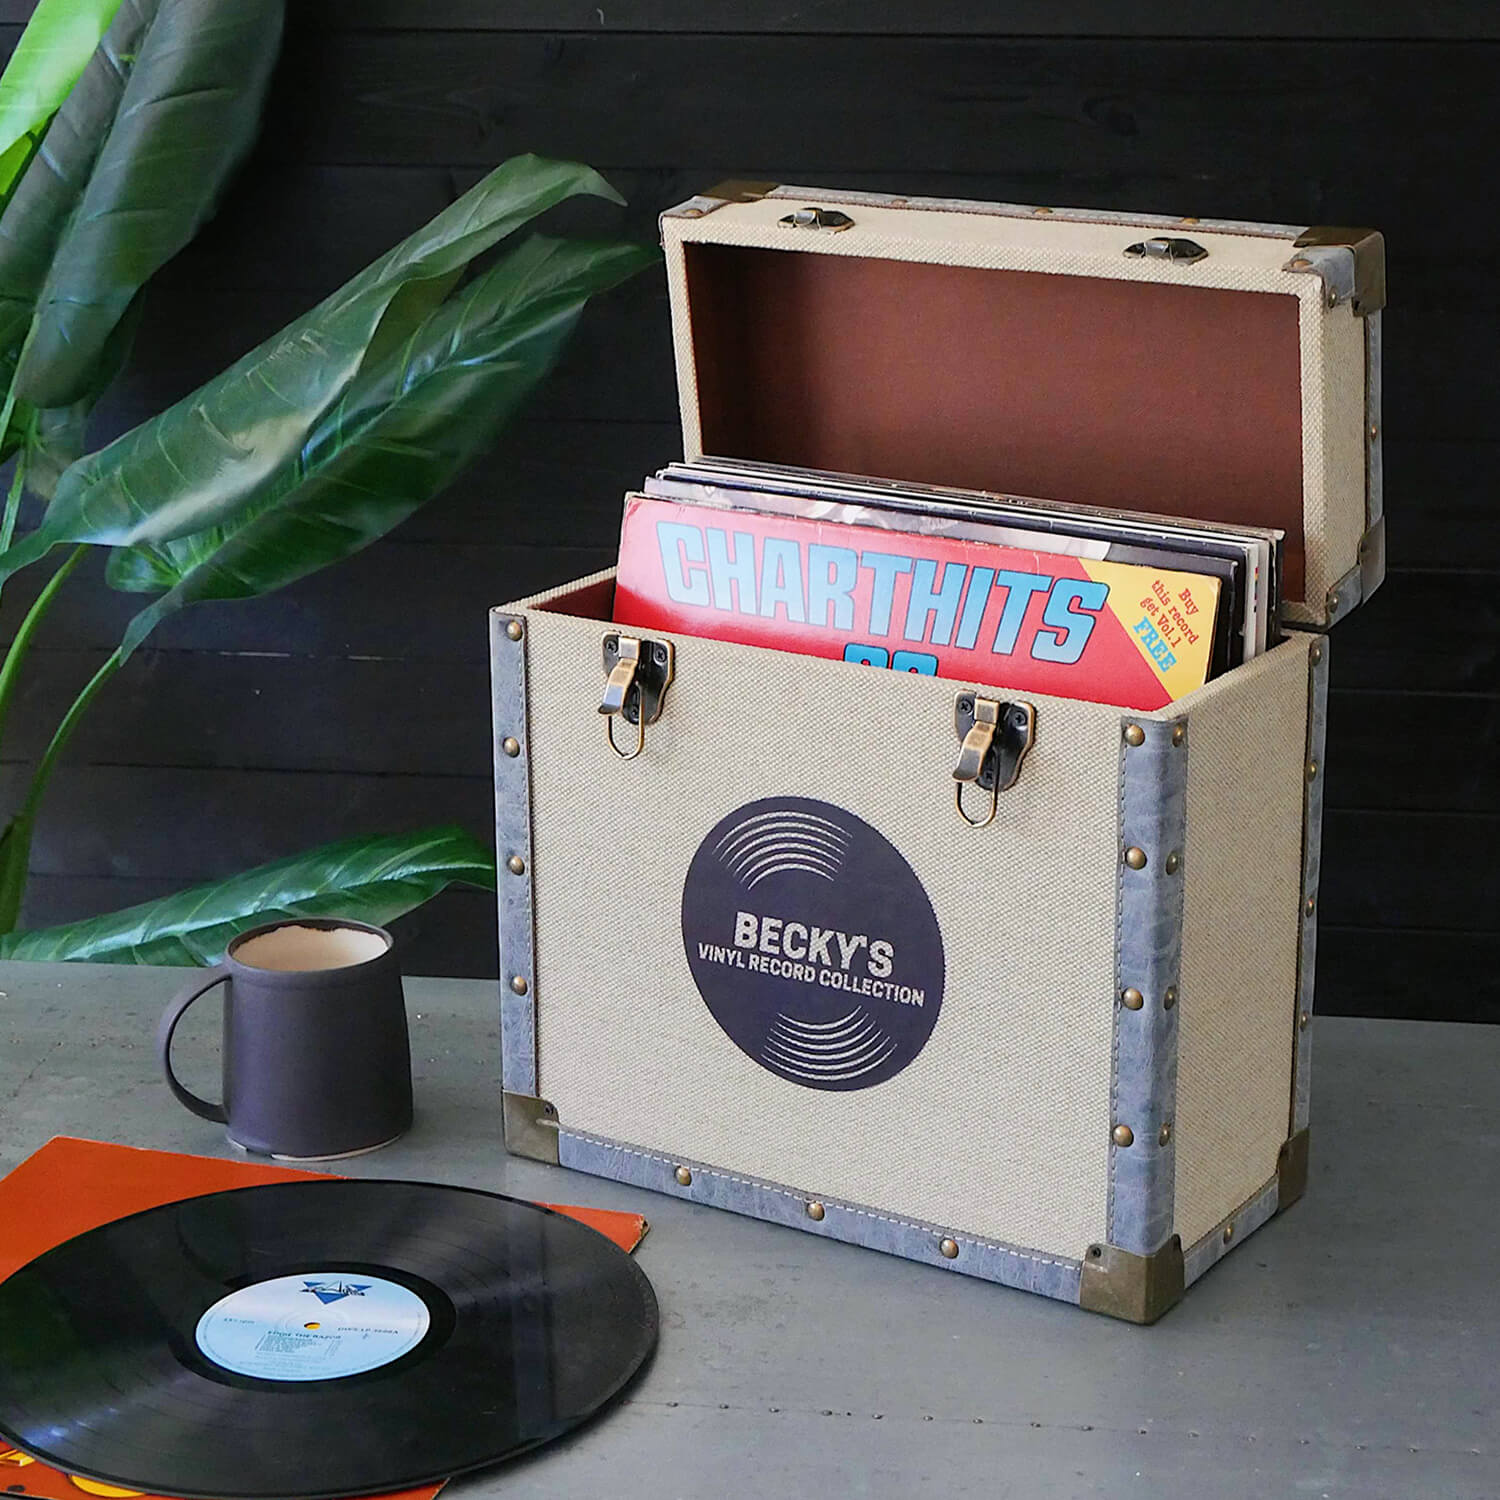  Caja de almacenamiento para álbumes de discos, caja de discos  de vinilo acrílico y bambú, caja multifuncional con soporte para discos  visible, con asa, ideal para almacenar discos de vinilo LP/álbumes